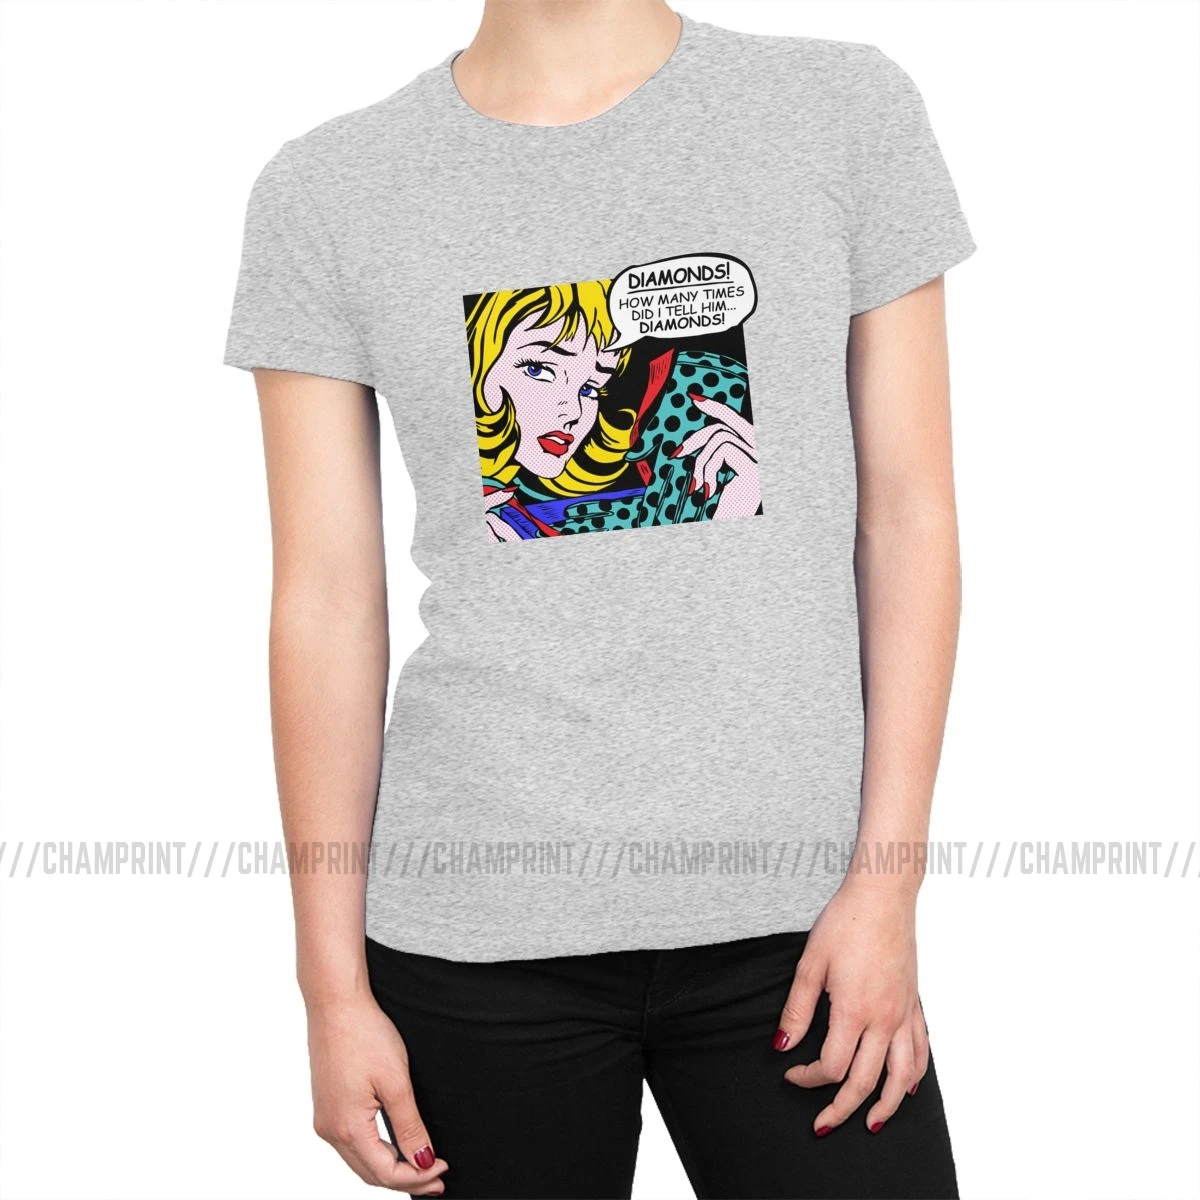 Roy Lichtenstein комическое искусство девушка с перчатками футболки женские корейский стиль поп-арт футболка футболки tumblr топы Женская одежда - Цвет: Серый